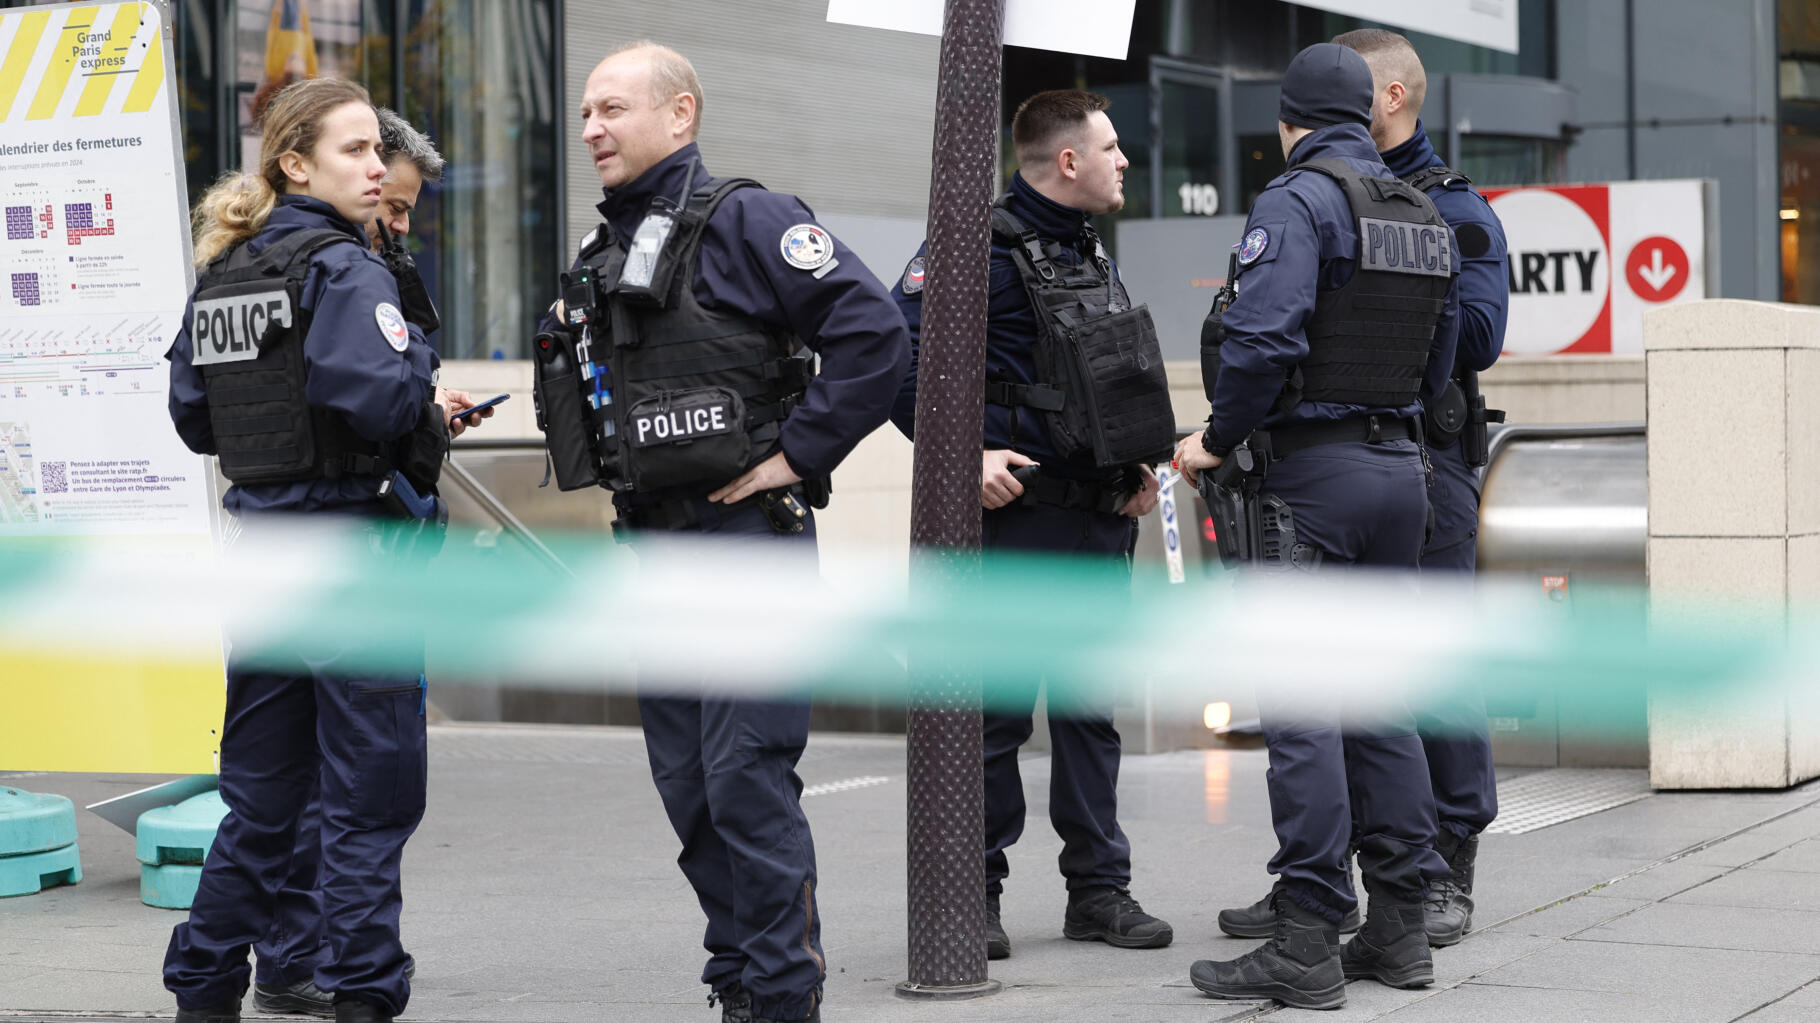   La police tire sur une femme qui proférait des menaces d’attentat à Paris, ce que l’on sait  